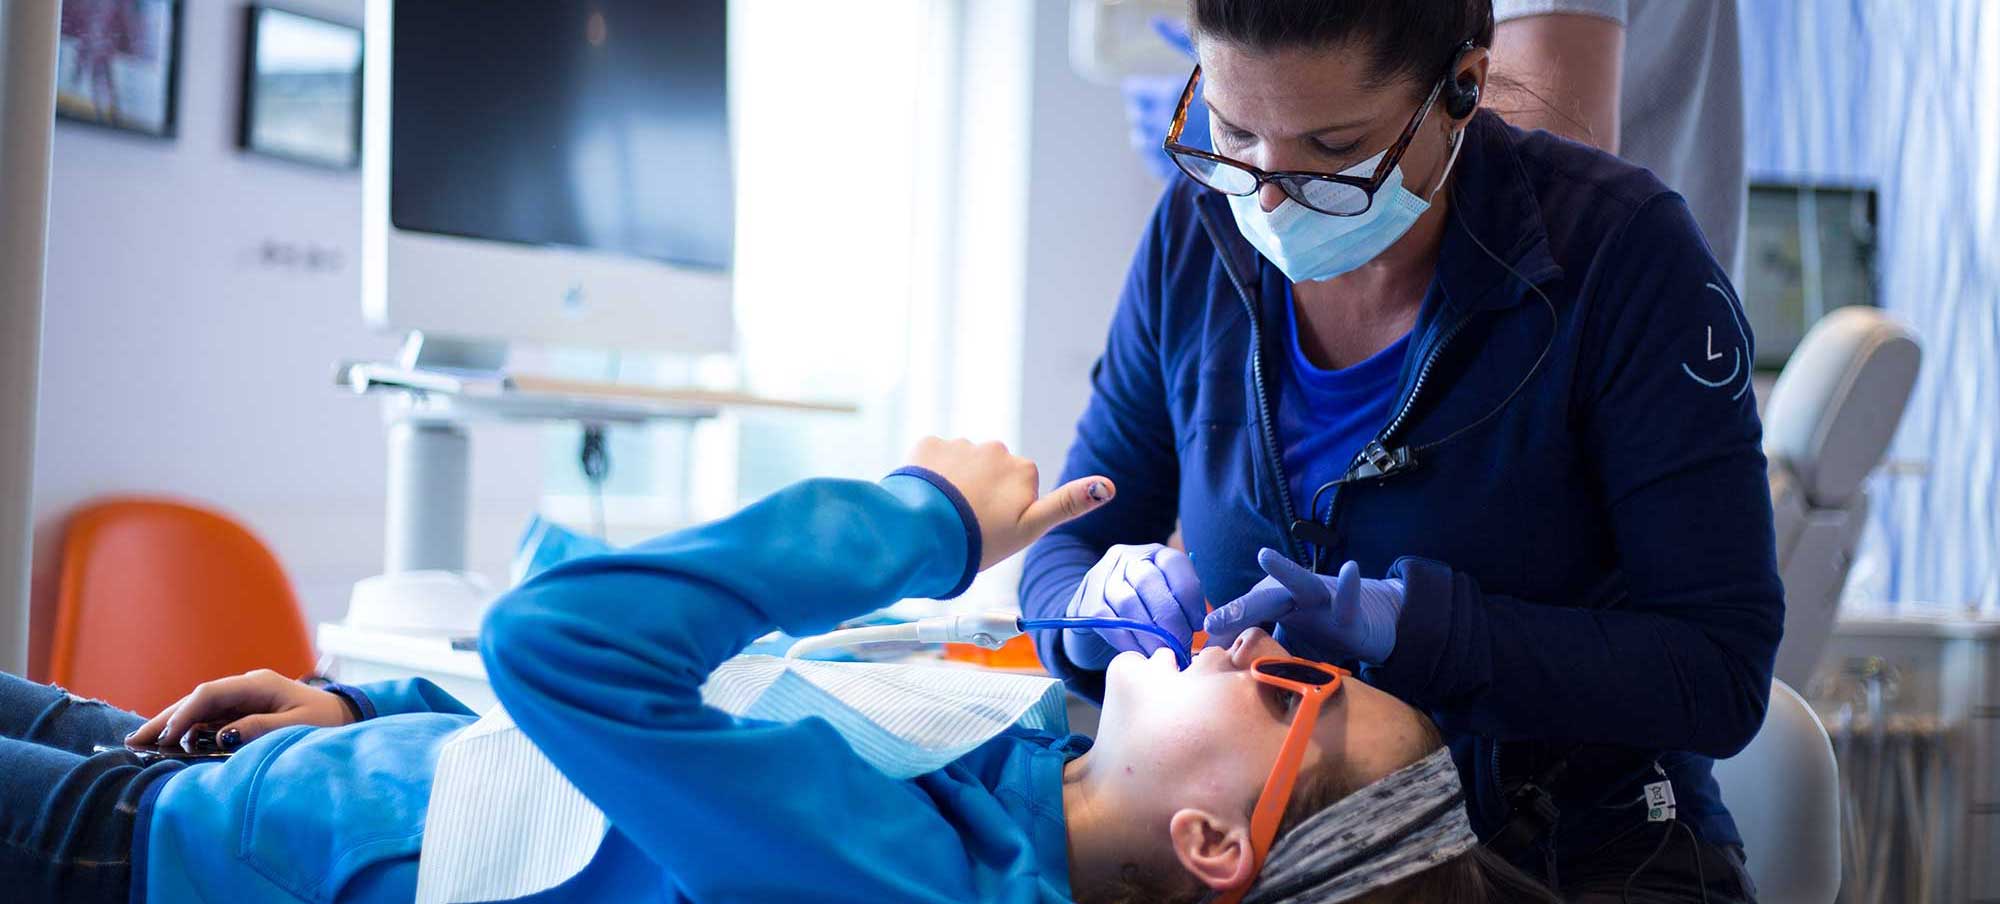 best orthodontics for teens in charlotte